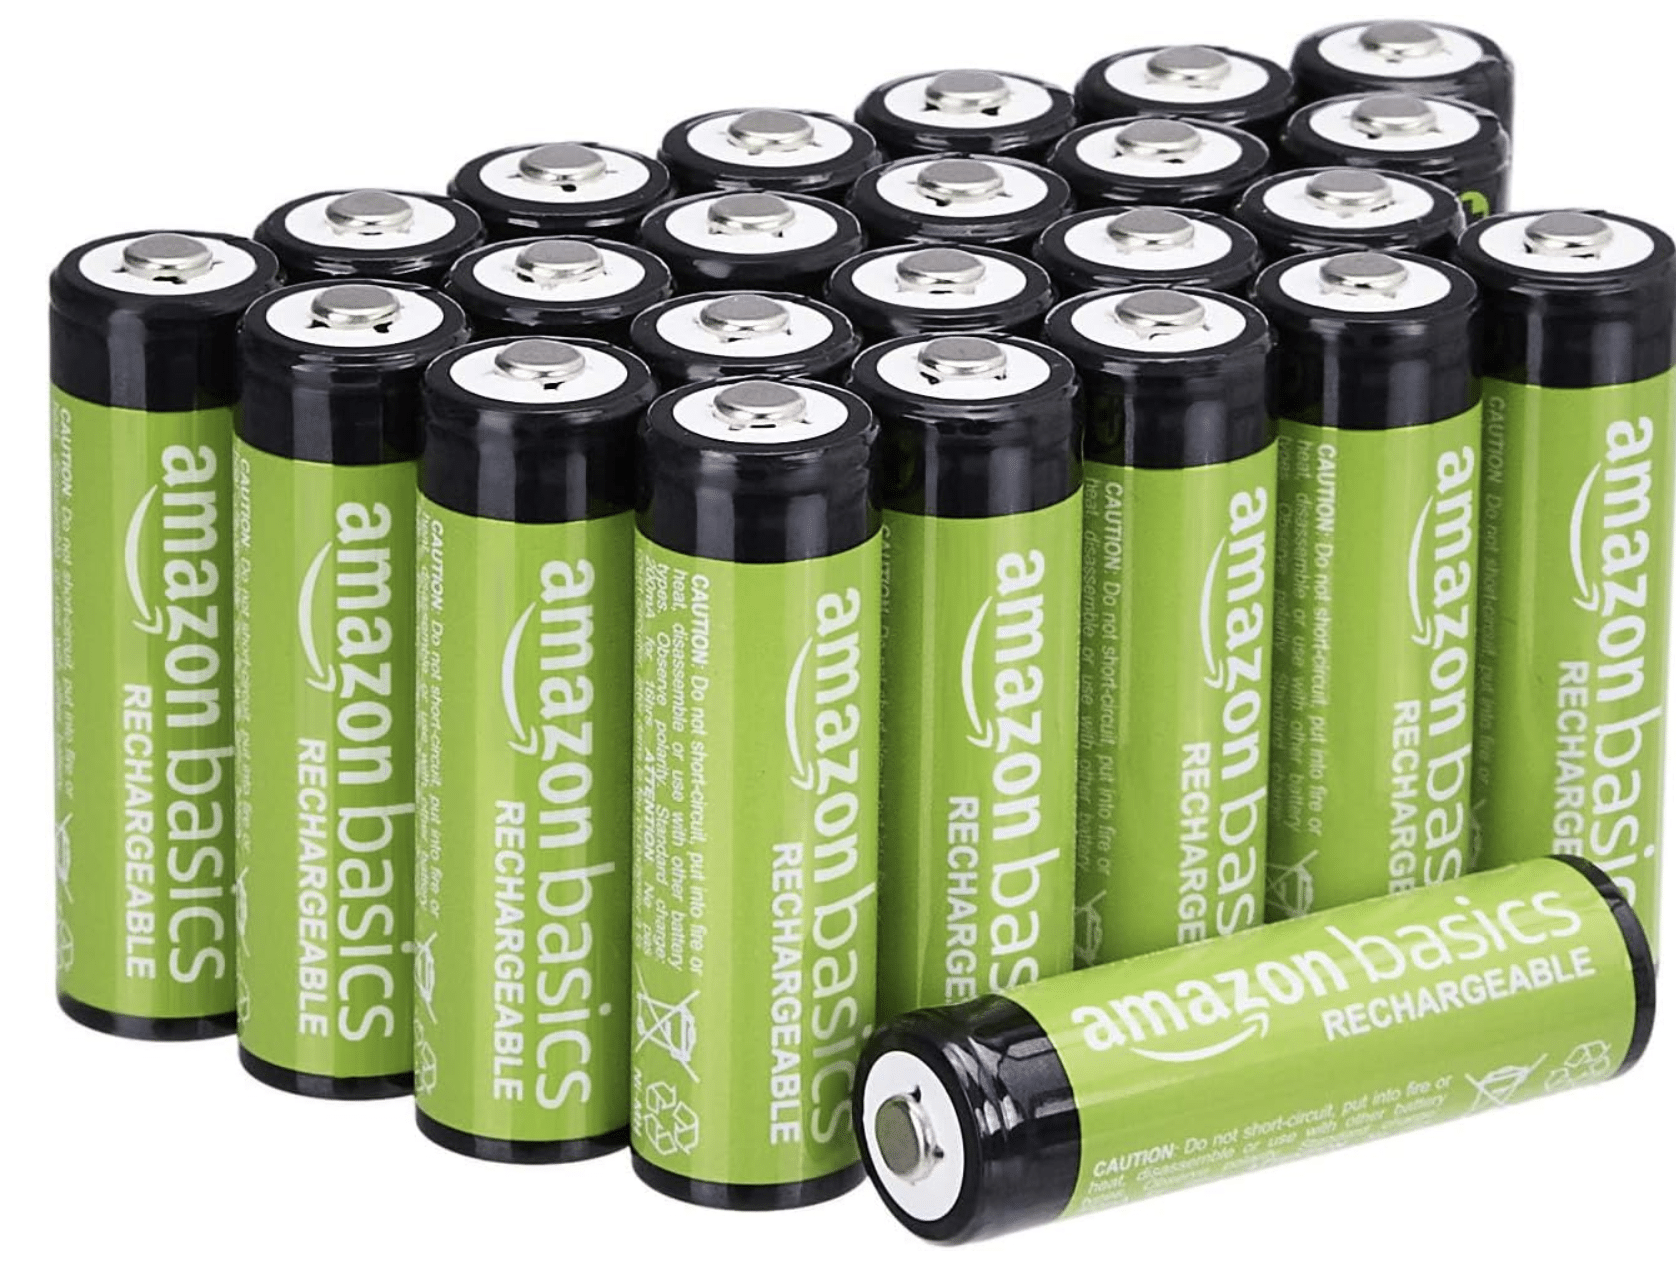 Amazon Basics AA-Batterien, wiederaufladbar, 2000 mAh, vorgeladen, 24 Stück